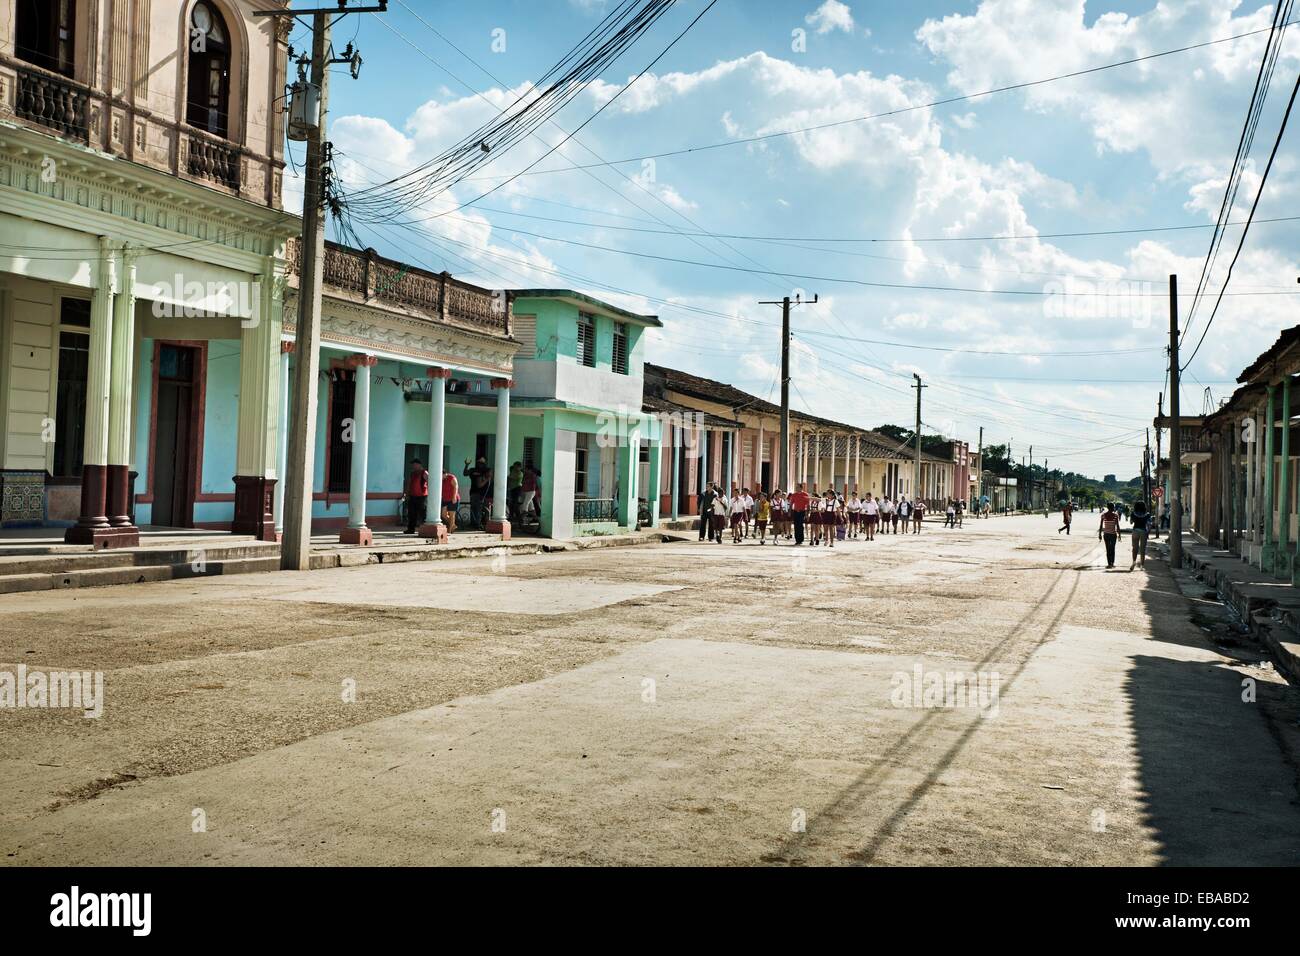 Calle, Placetas, provincia de Santa Clara, Cuba Fotografía de stock - Alamy